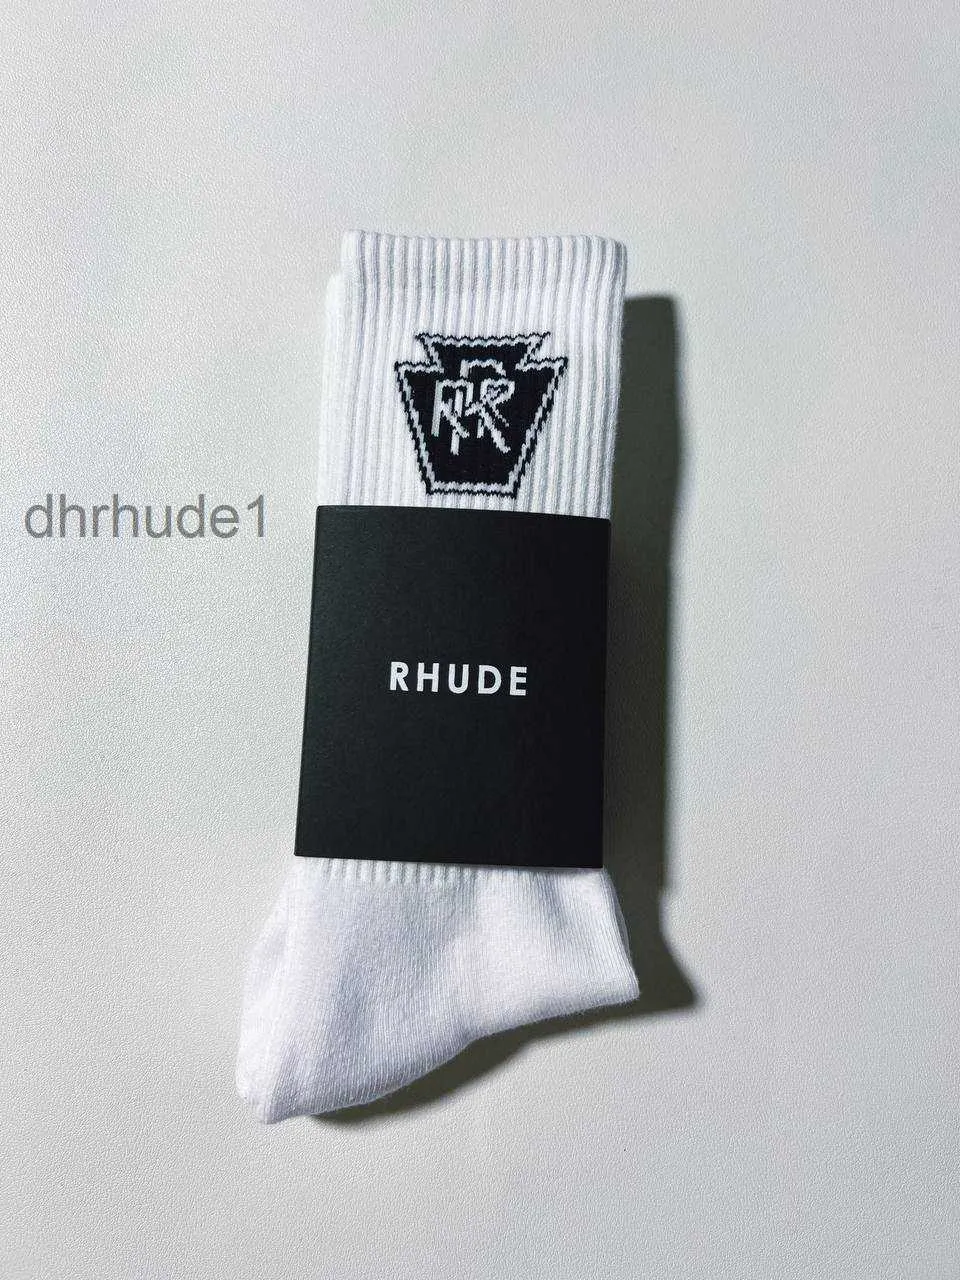 Rhude Men Socks Women Designer Sock Luxury Fashion Antibacterial Deodorant Sports Socks Populära högkvalitativa bomullsbandsbrev Knit Socks White Black So So A22a